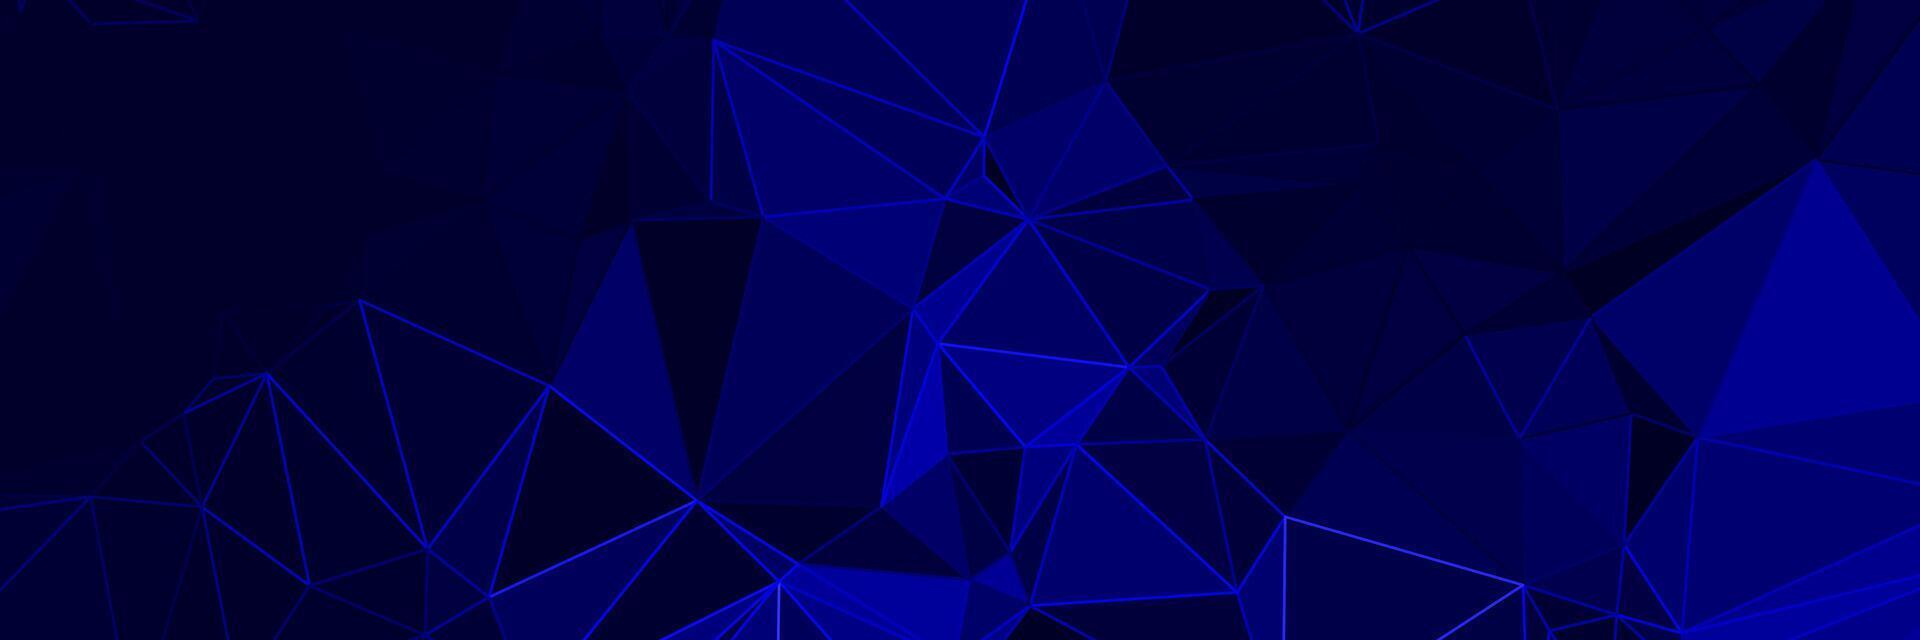 abstrakt blå geometrisk bakgrund med trianglar vektor